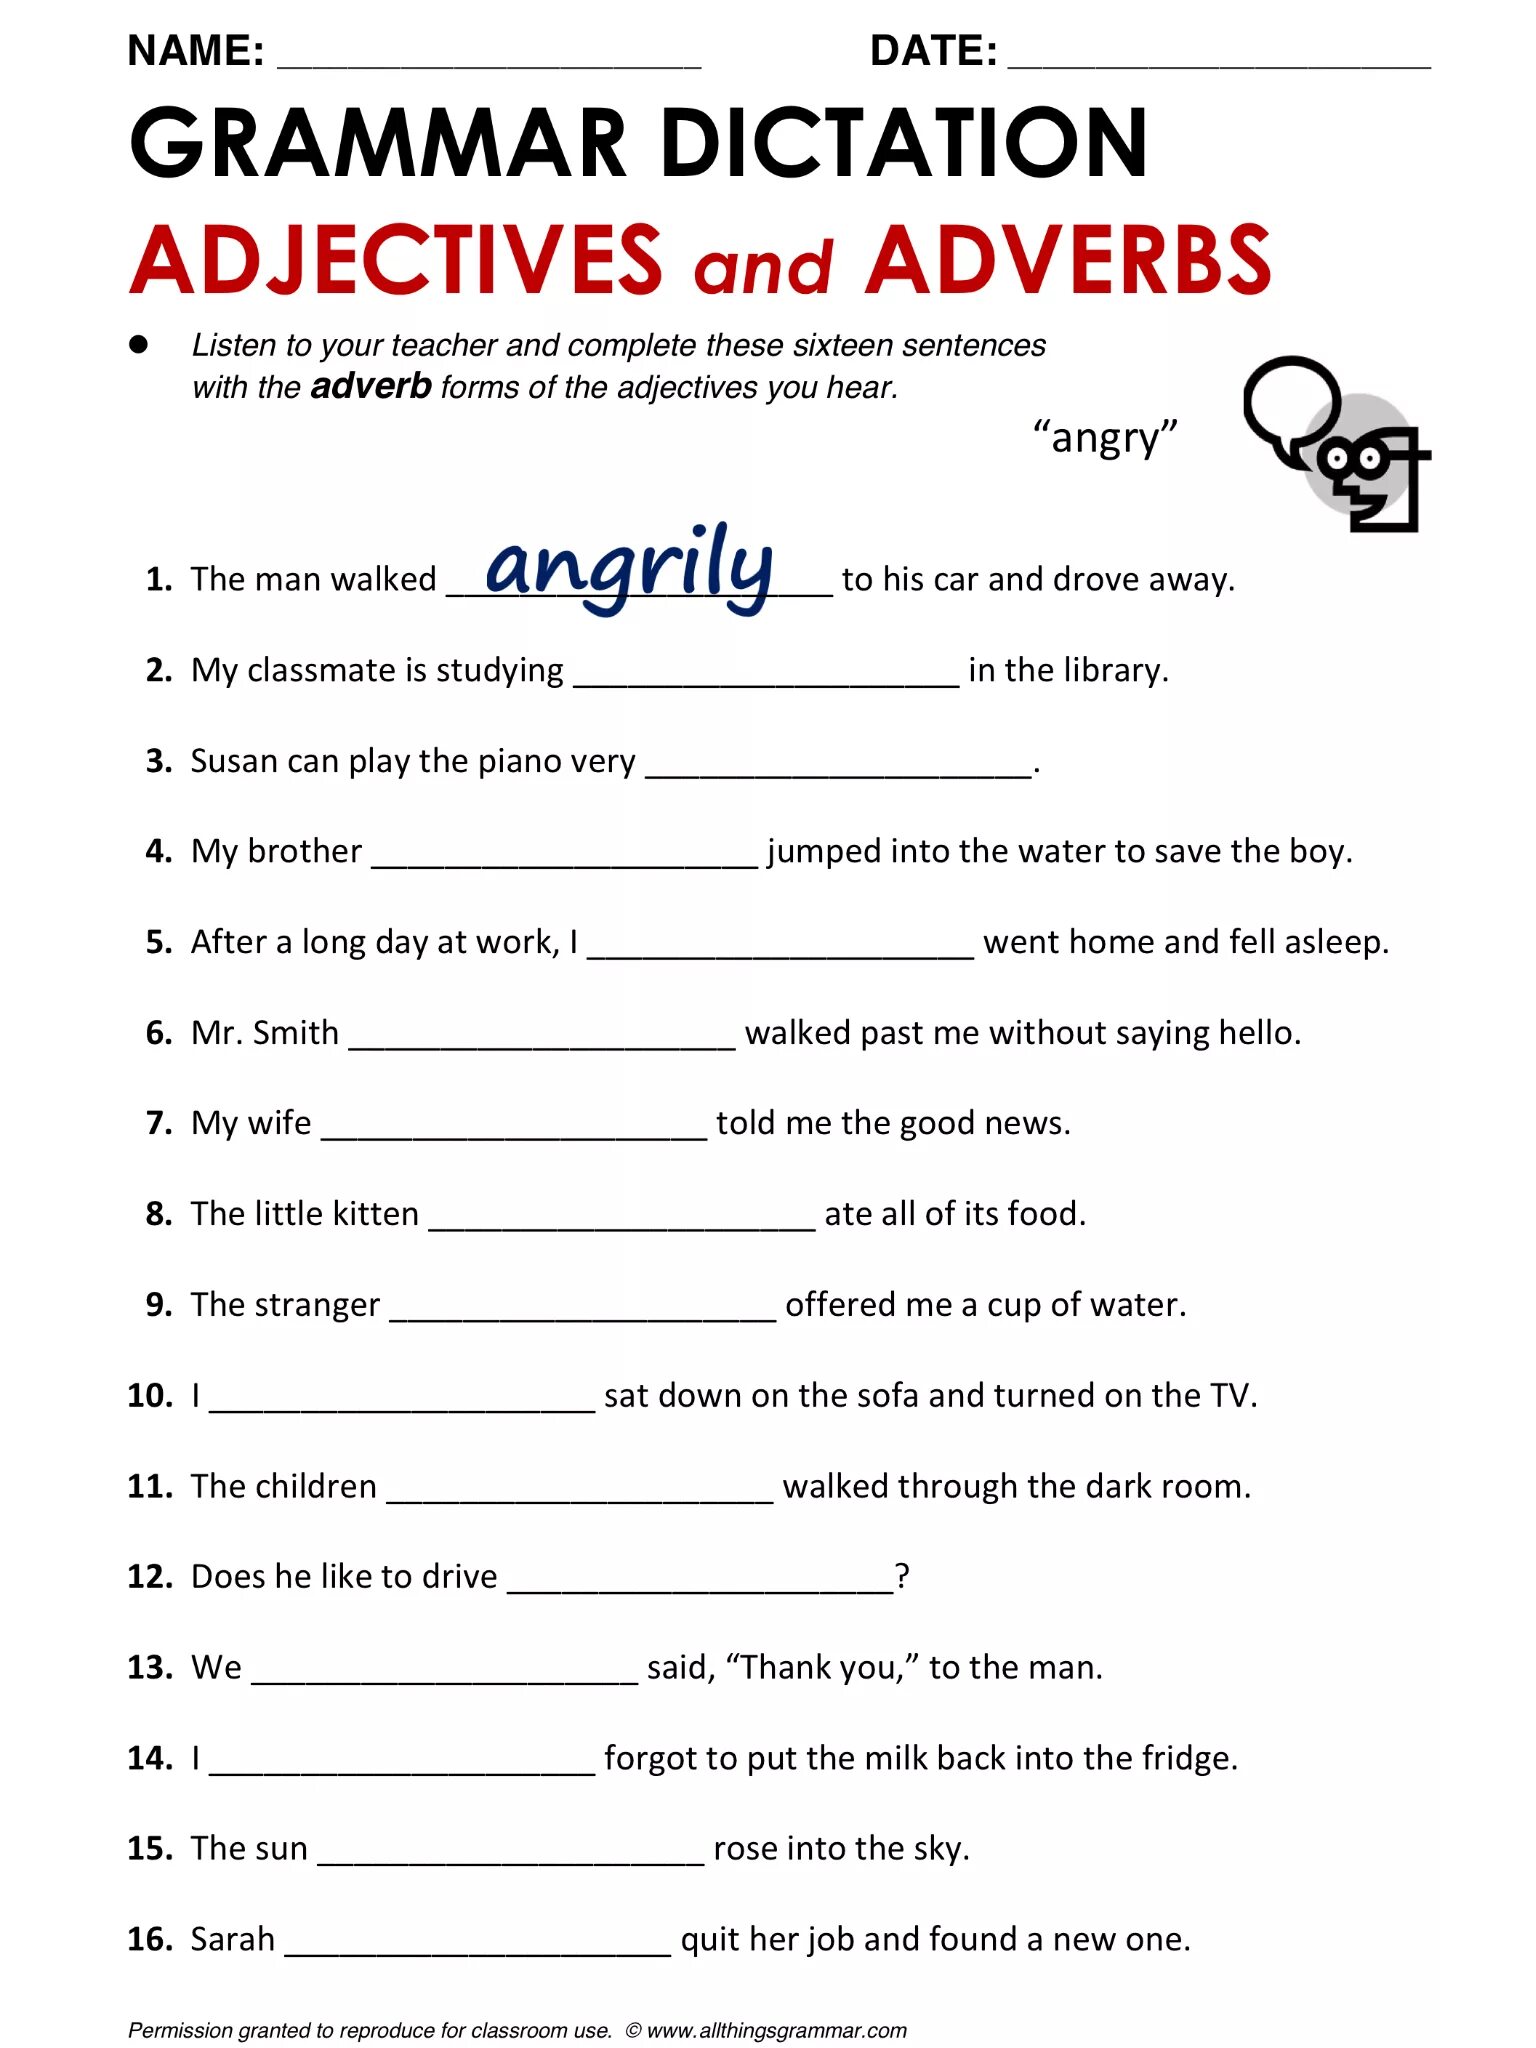 Adverbs упражнения. Наречия в английском языке Worksheets. Adjectives and adverbs Worksheets. Наречия в английском языке упражнения. Grammar exercises прилагательное.